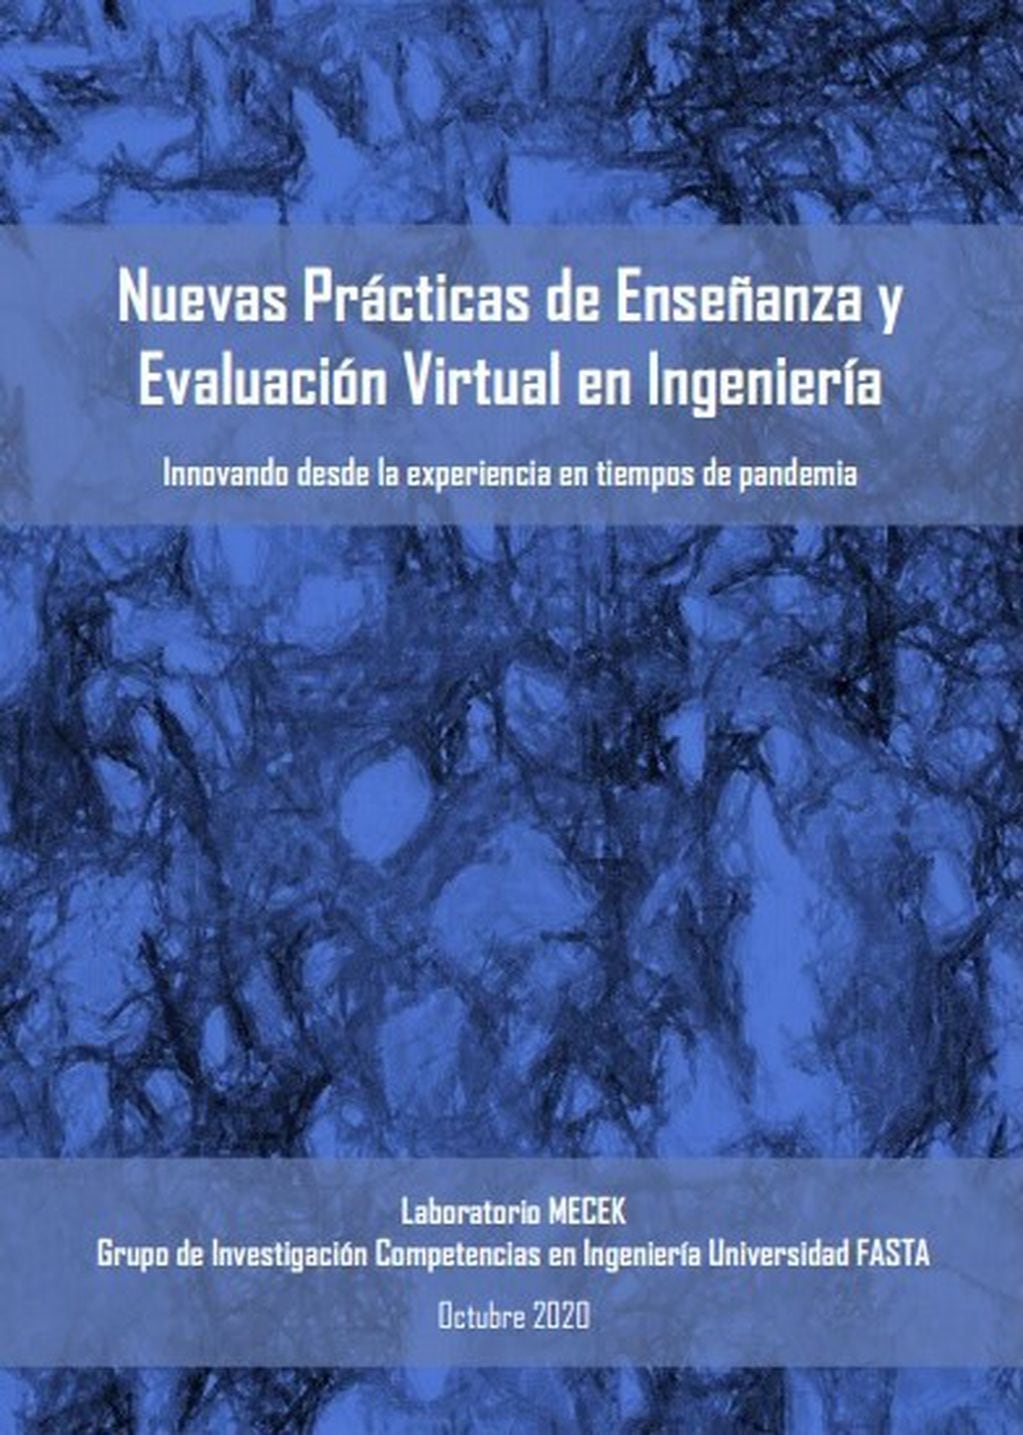 “Nuevas Prácticas de Enseñanza y Evaluación Virtual en Ingeniería. Innovando desde la experiencia en tiempos de pandemia”, editado por la Universidad FASTA.